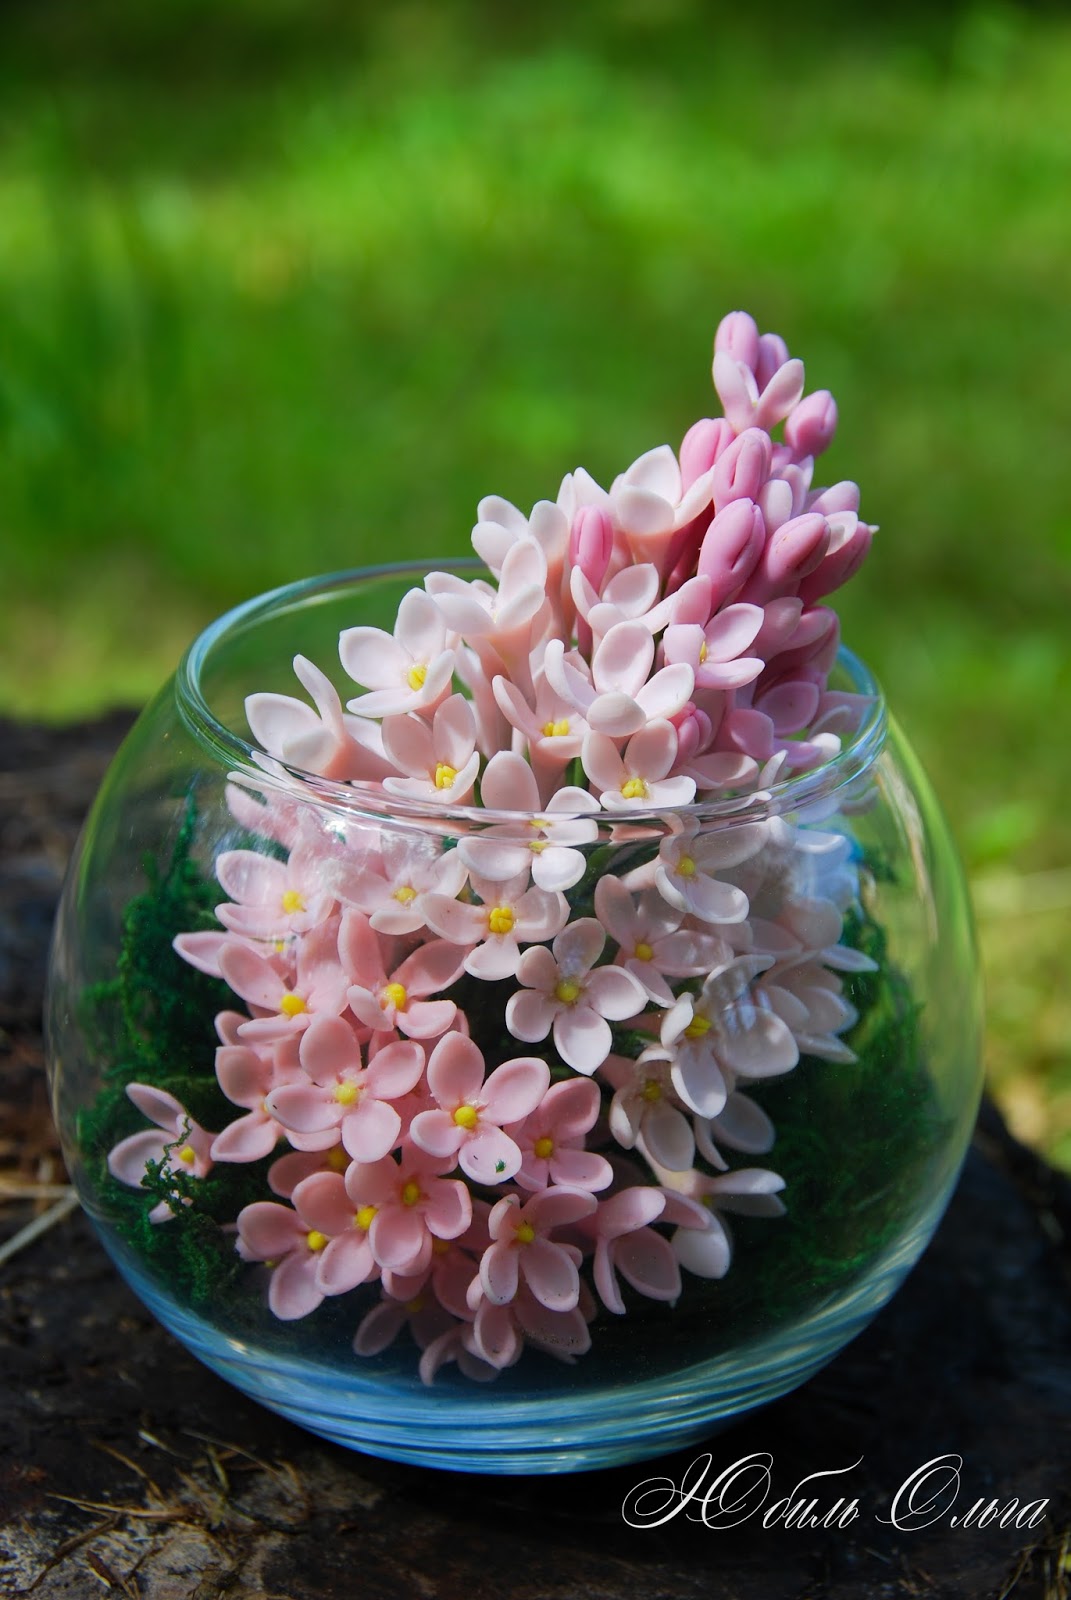 Yu yu flowers. Цветы в стеклянном шаре. Яркие красивые весенние цветы в стеклянном шаре. Цветы в стеклянном шаре своими руками.